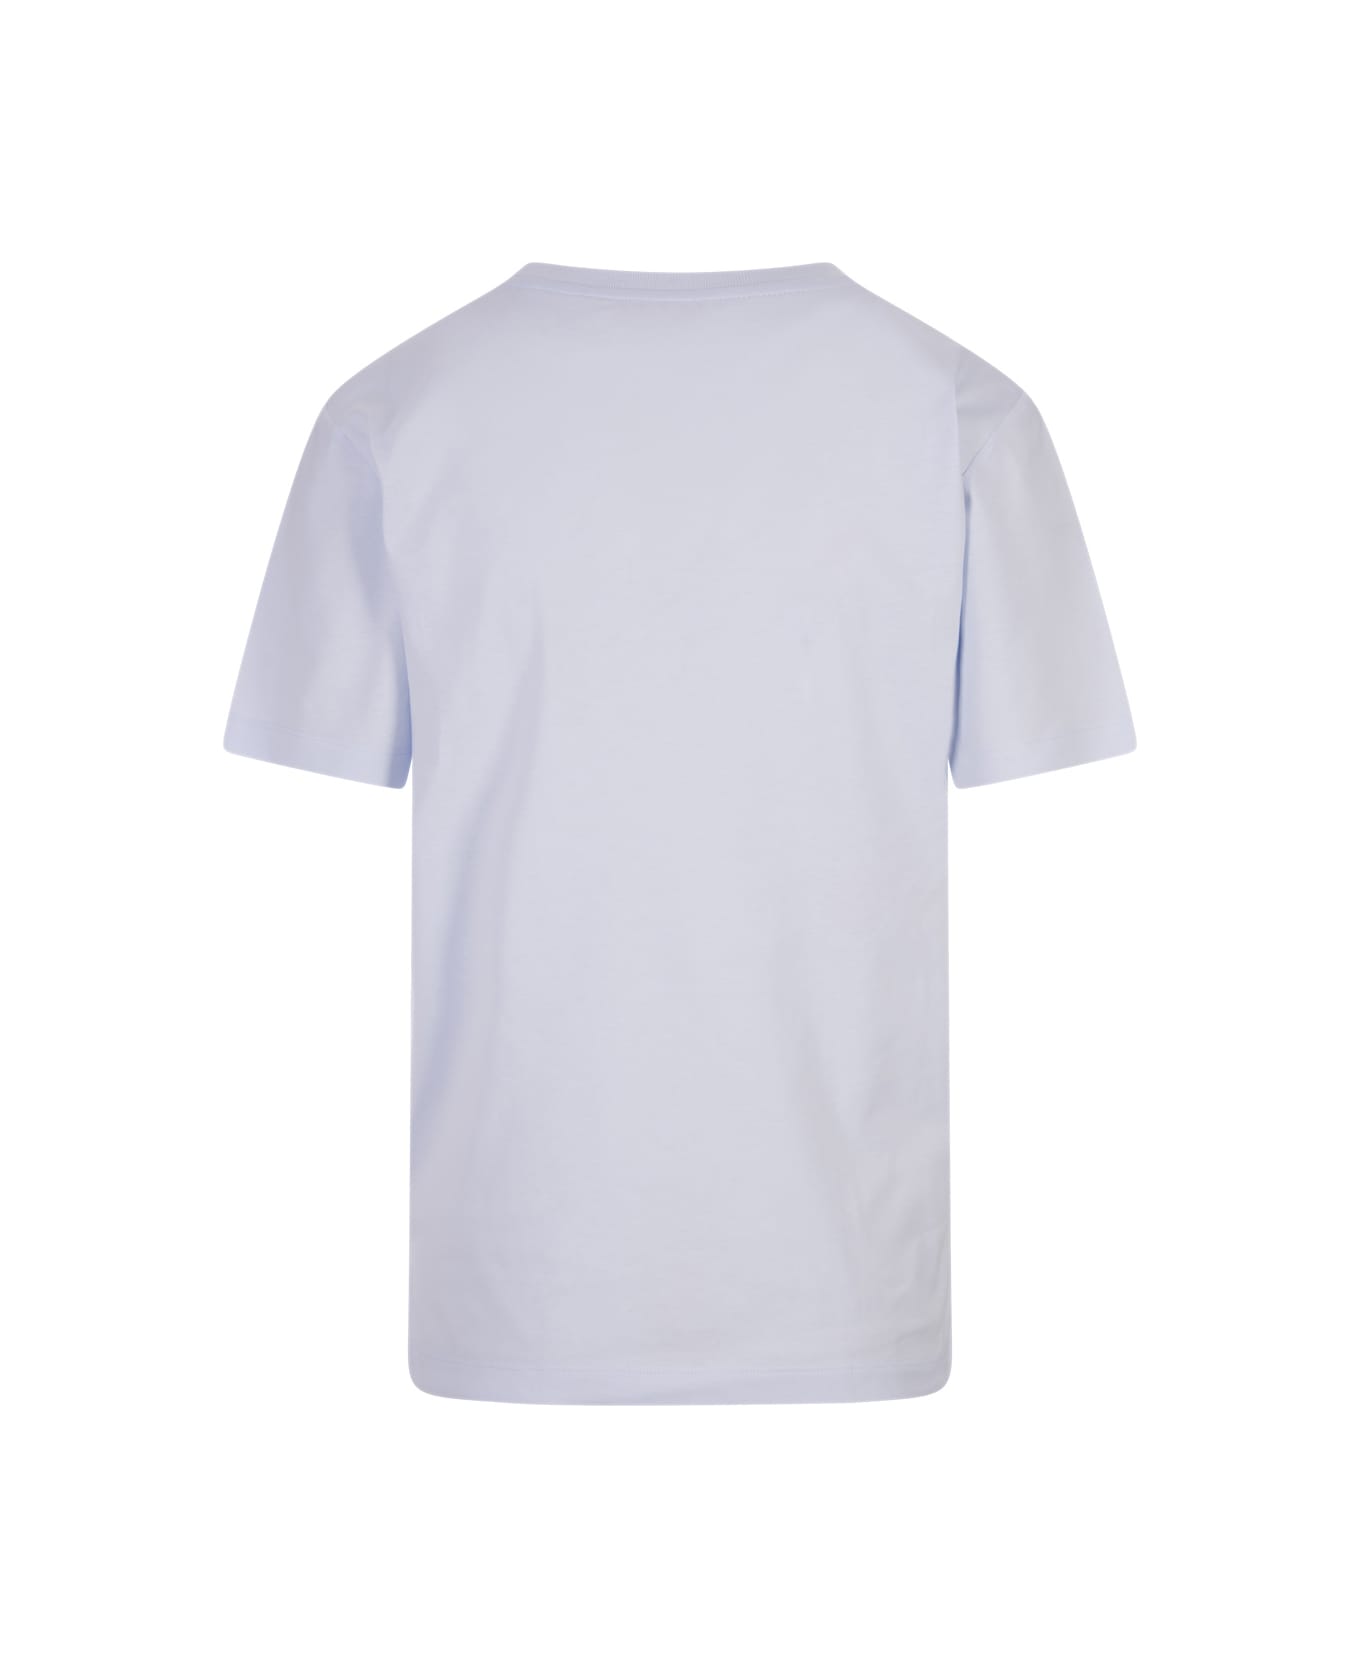 Marni Light Blue T-shirt With Marni Stitching - Blue Tシャツ